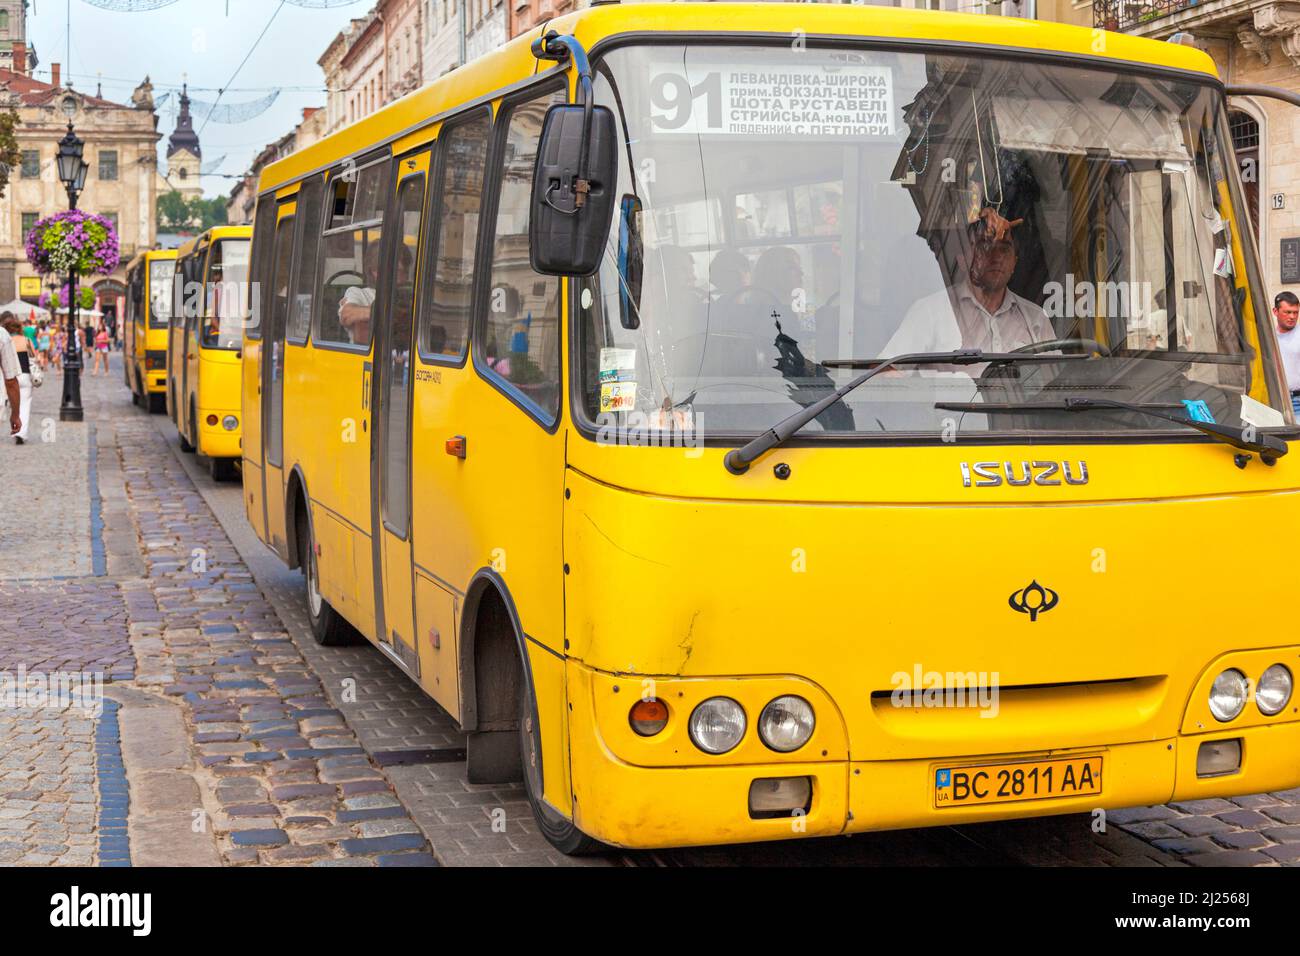 Minibus auf der gepflasterten Straße, Rynok-Platz, L'viv Stadtzentrum, Ukraine Stockfoto